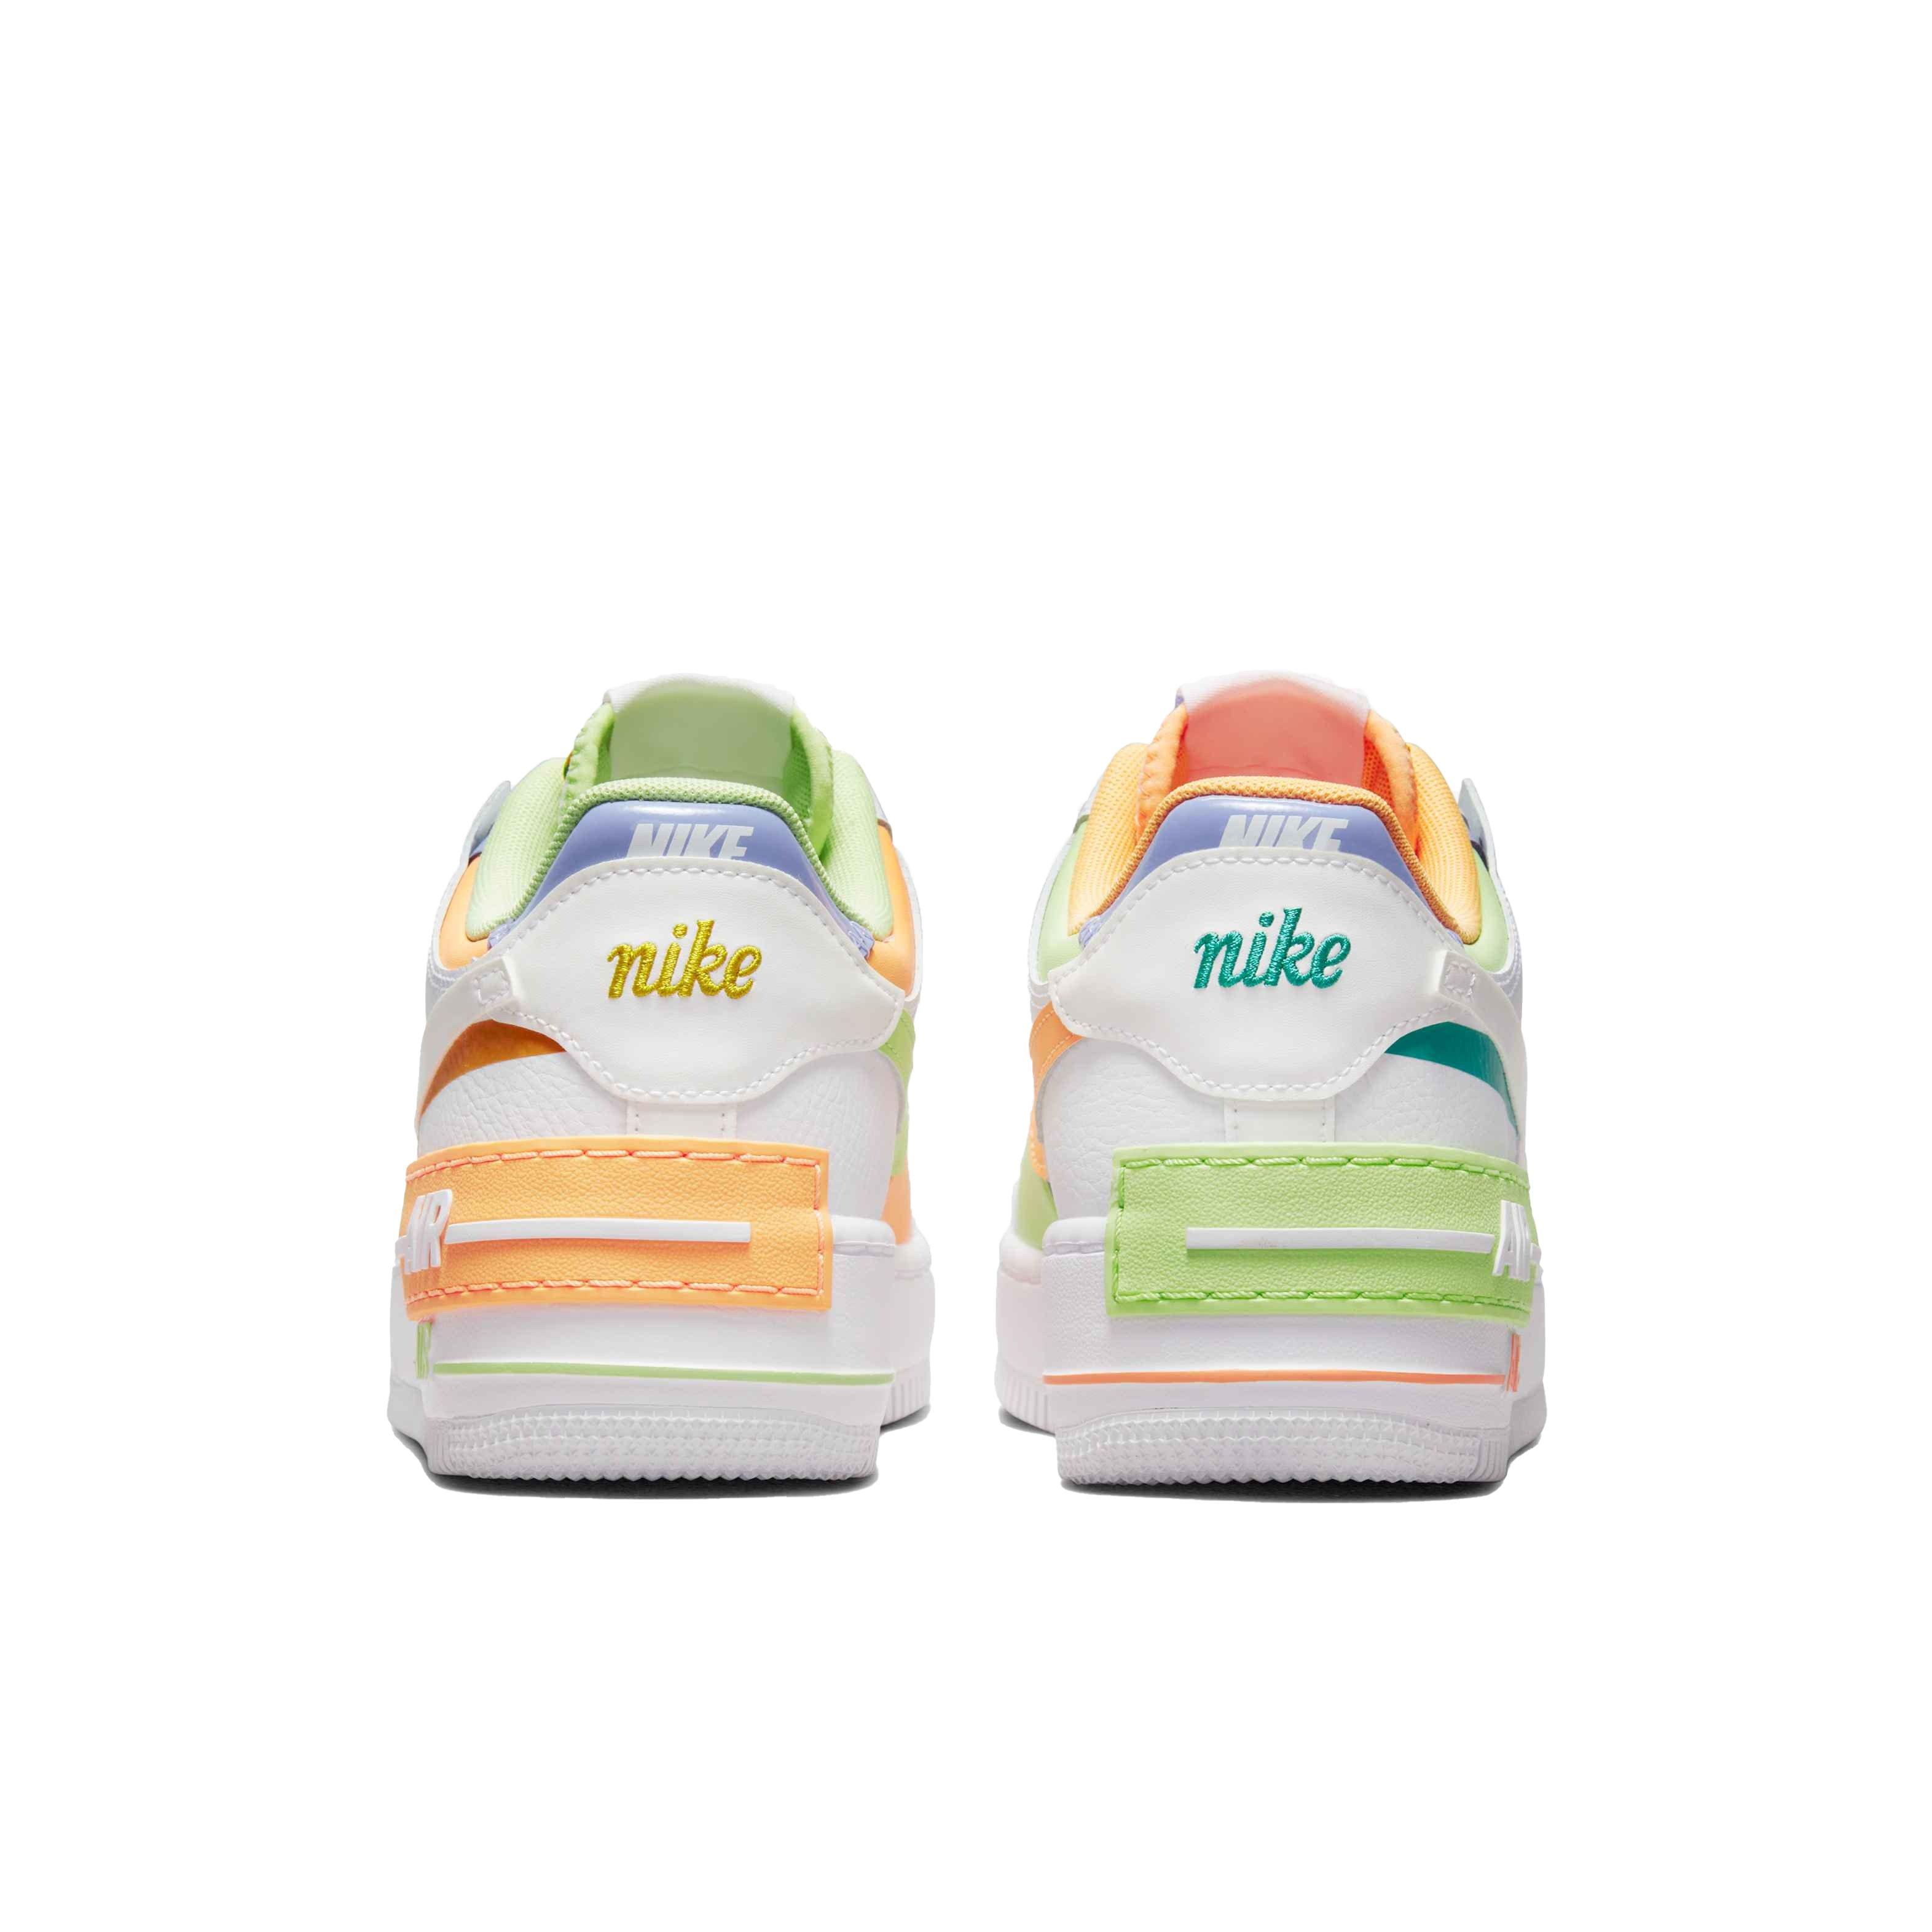 Nike Air Force 1 Shadow White/Peach Cream/Light Liquid Lime